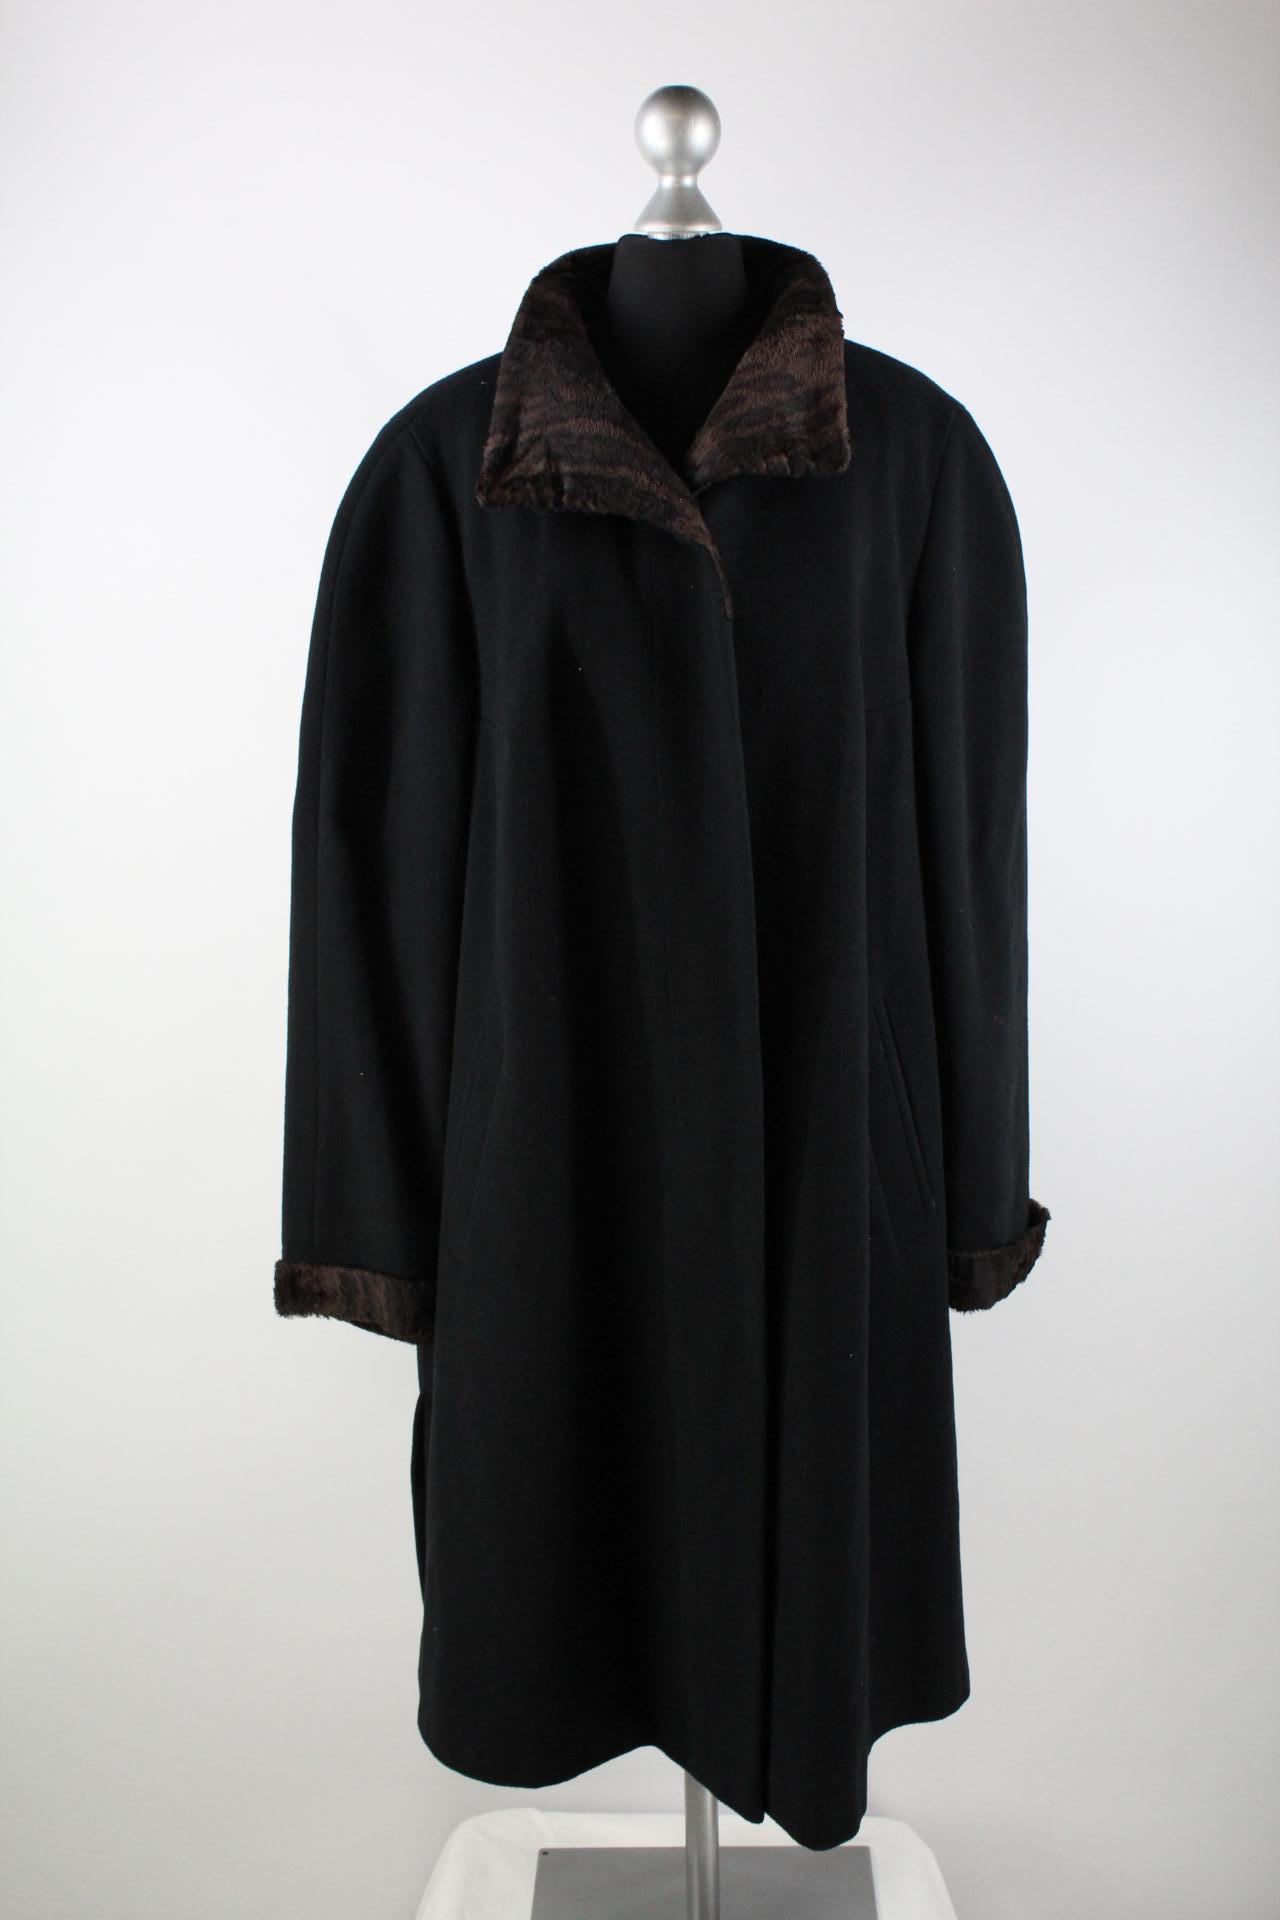 Marcona Damen-Mantel schwarz Größe 46